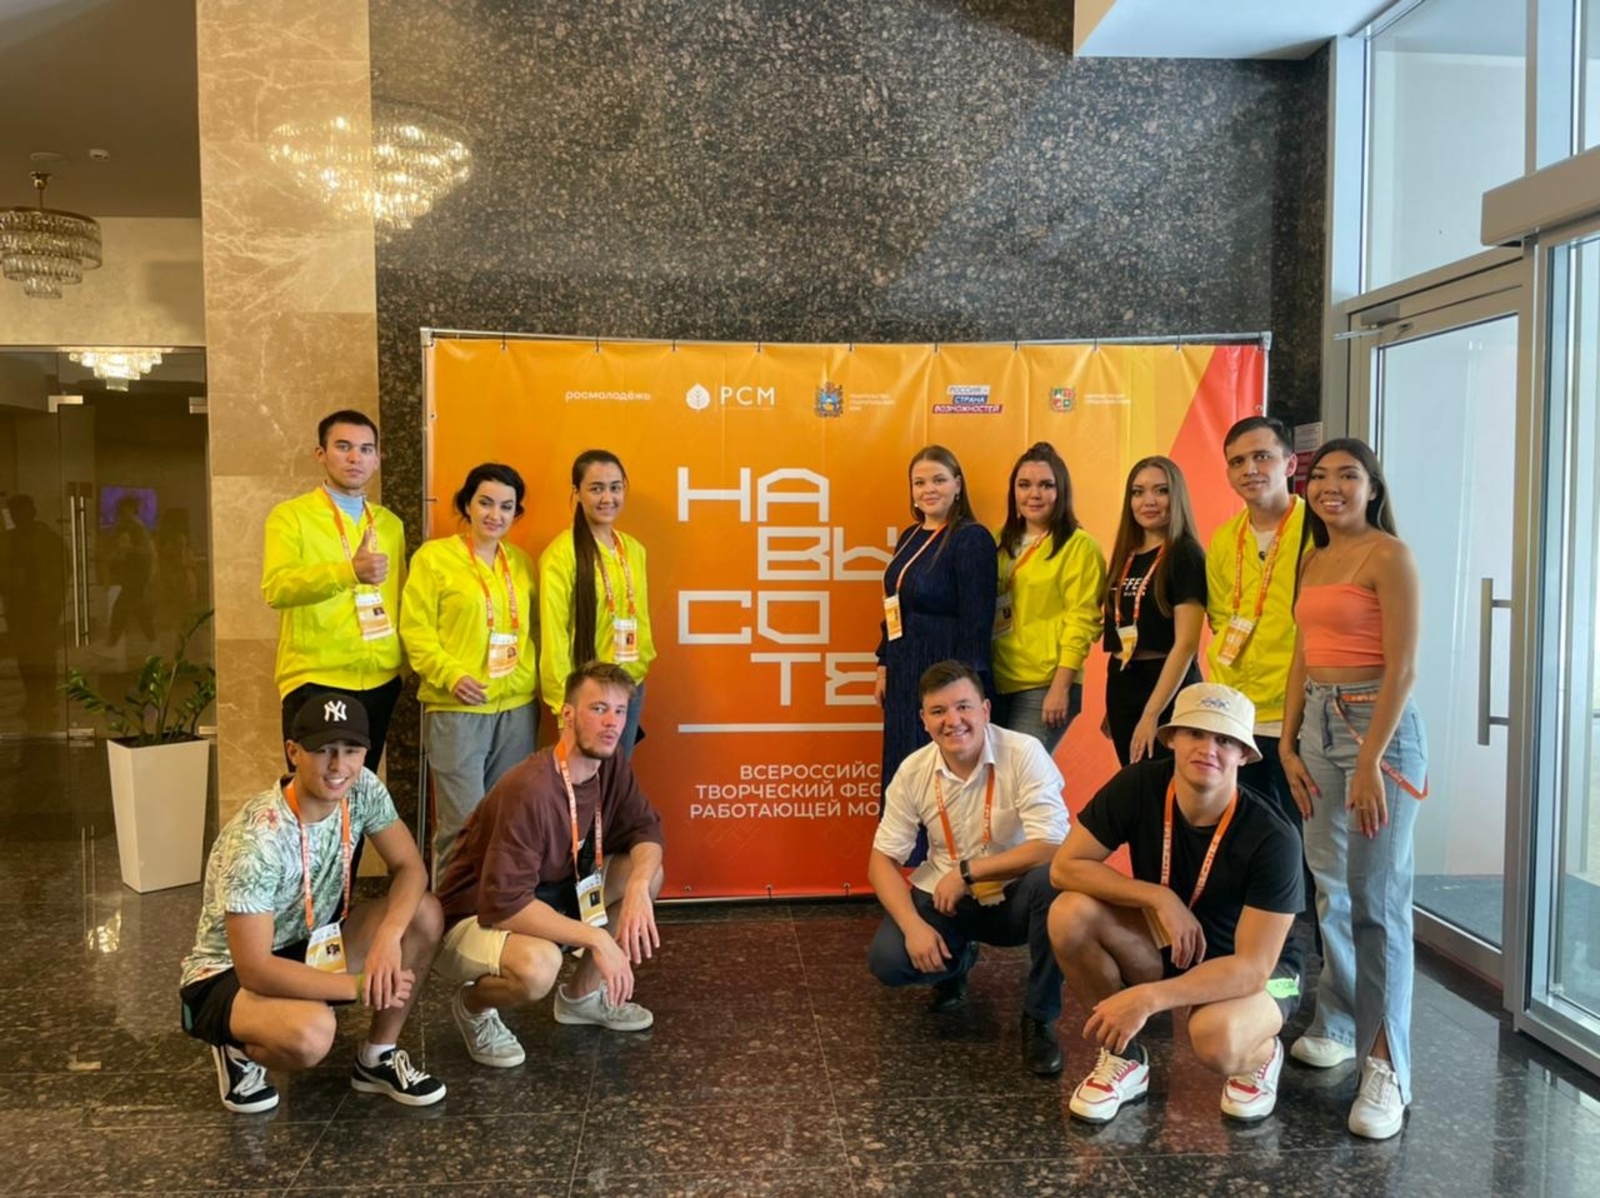 На Всероссийском фестивале работающей молодежи «На высоте» делегация из Башкирии завоевала шесть наград